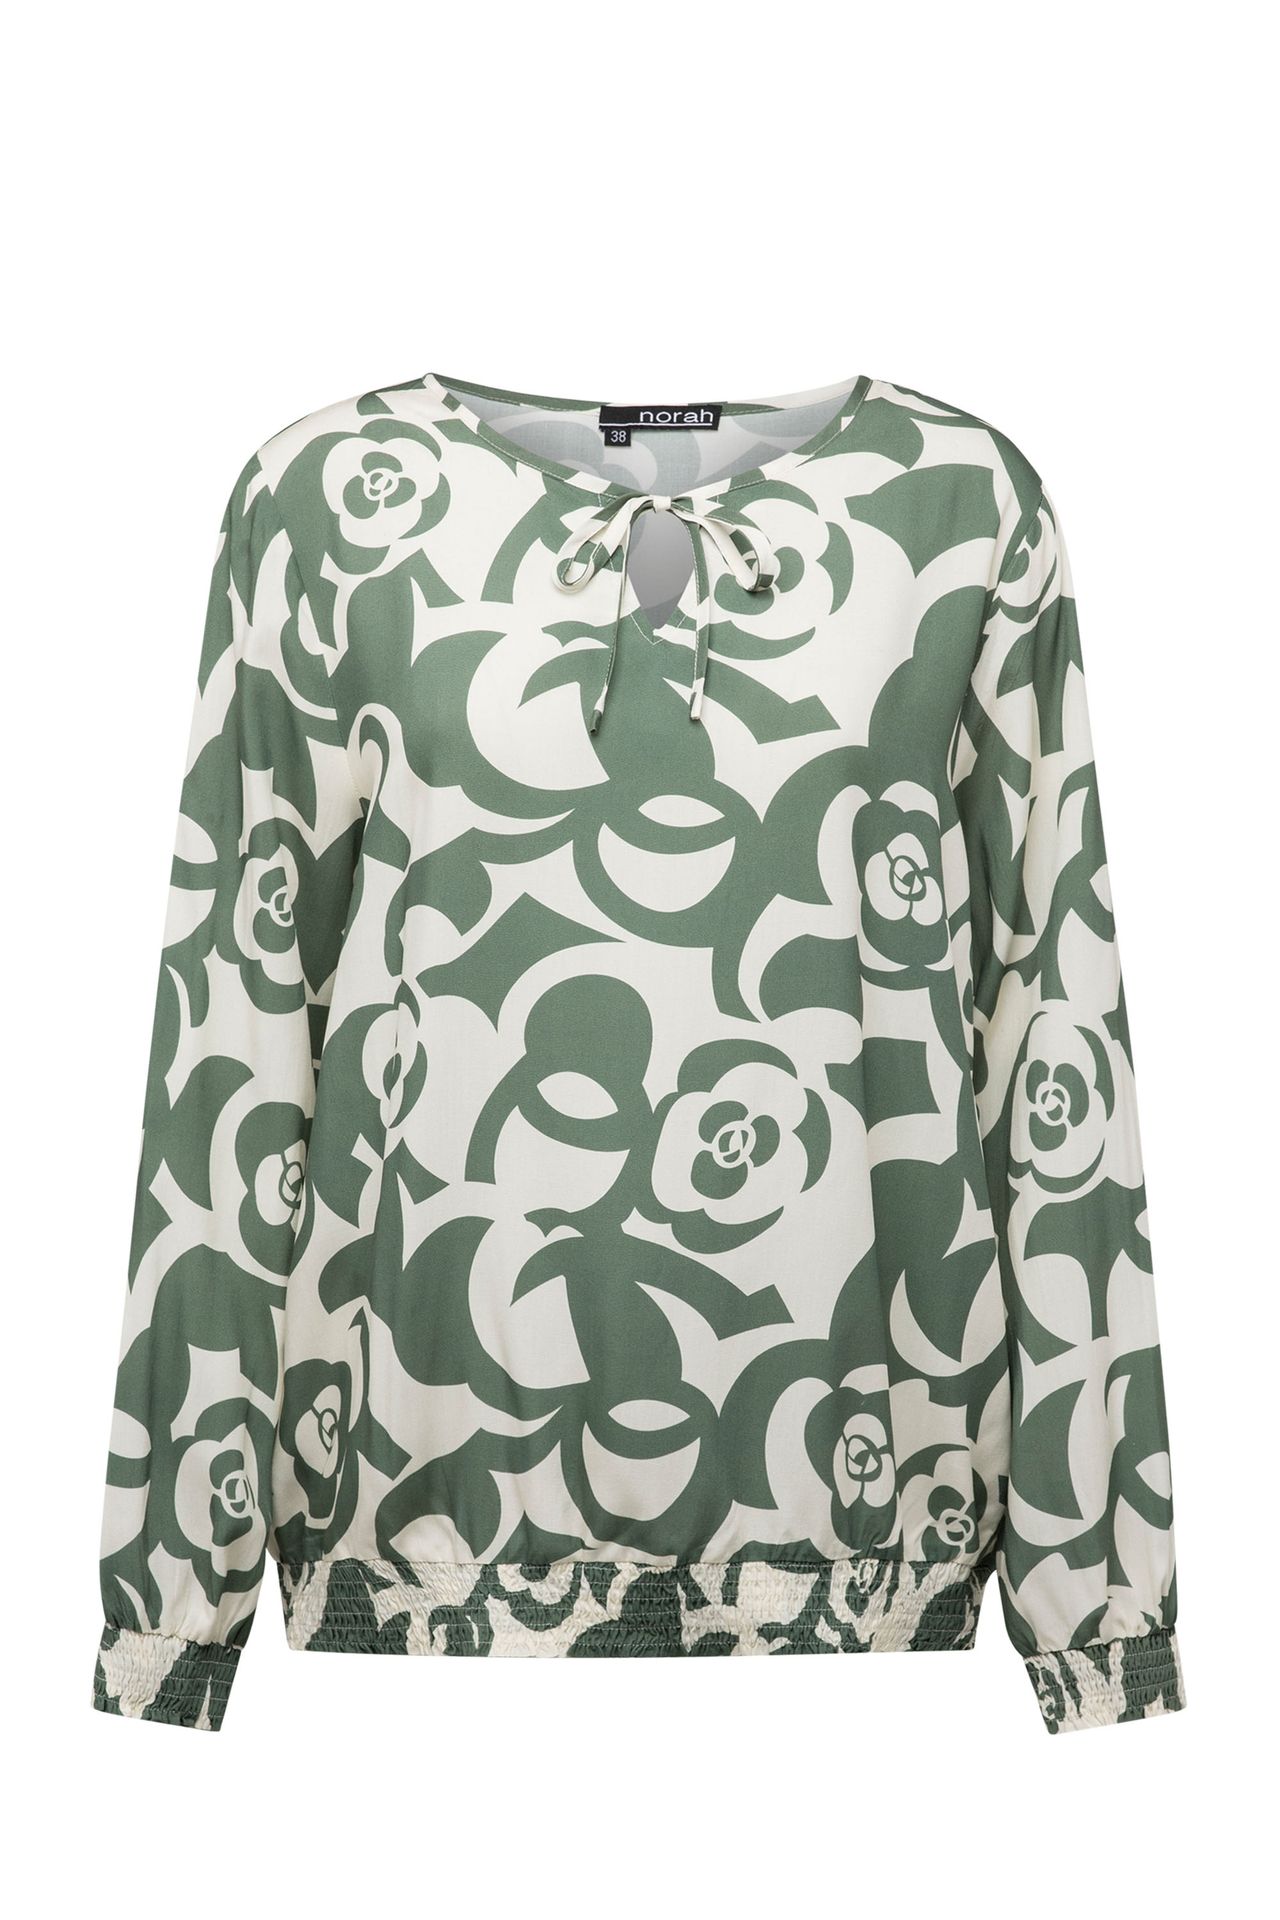 Norah Groene blouse met pofmouwen green multicolor 213861-520